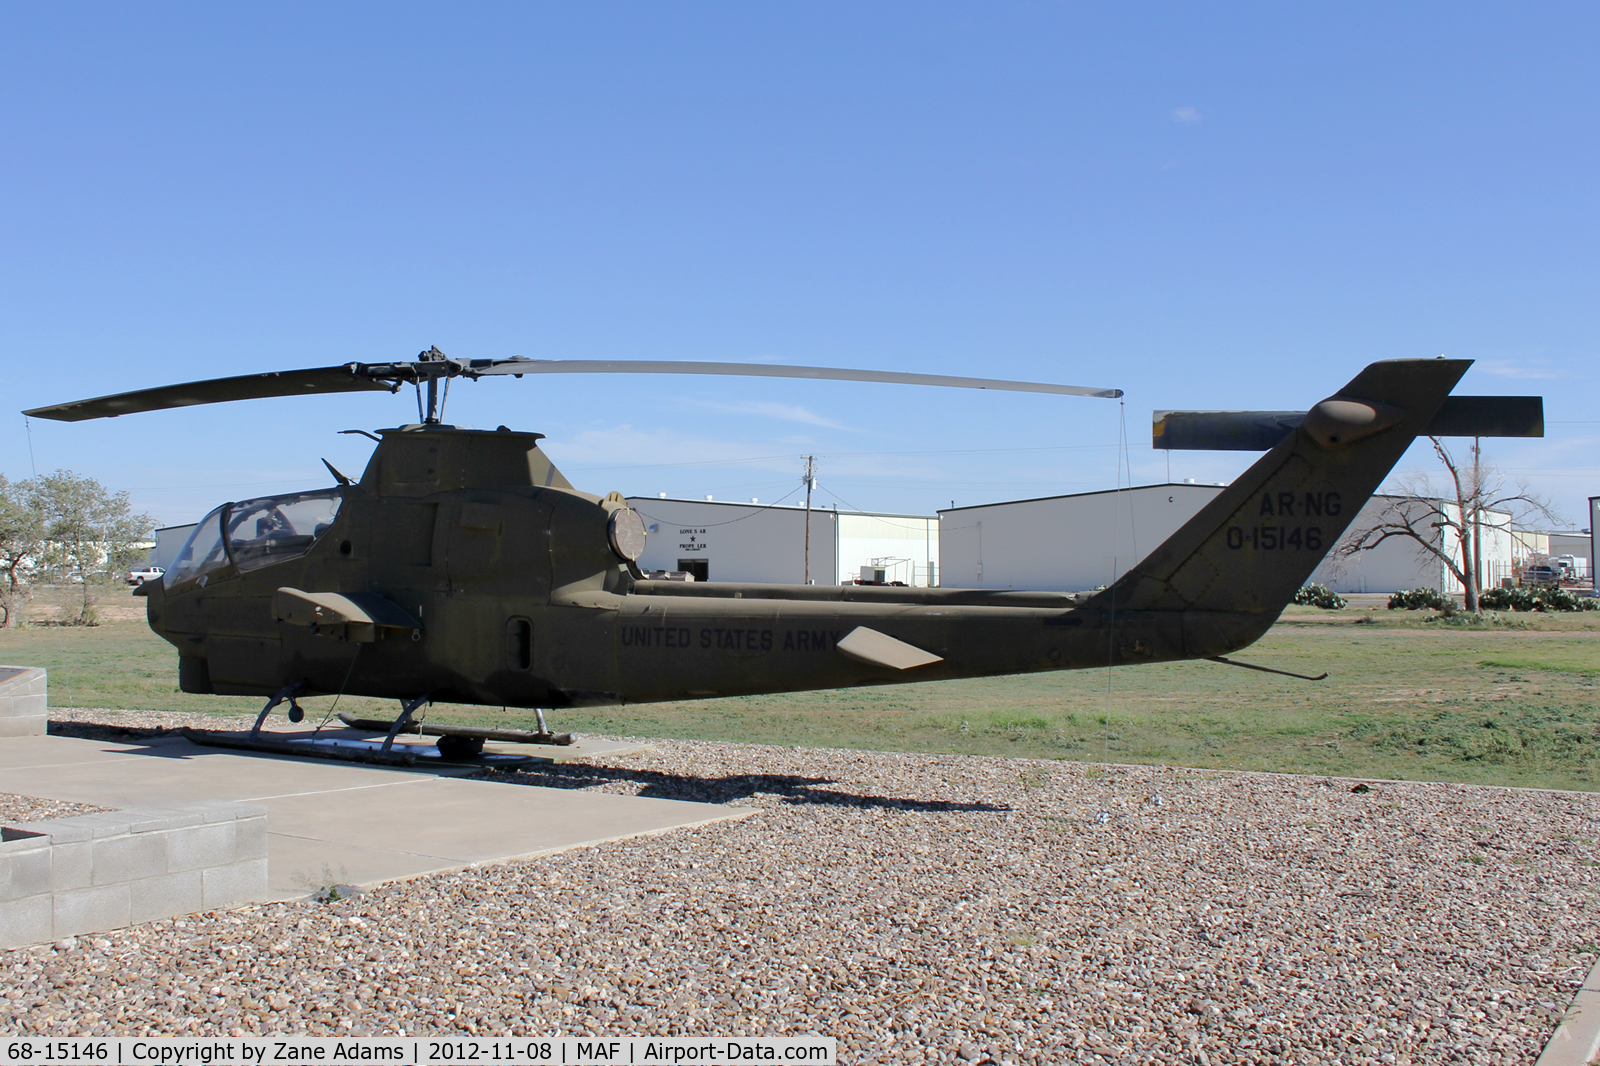 68-15146, 1968 Bell AH-1S Cobra C/N 20680, At the Commemorative Air Force hangar - Mildand, TX